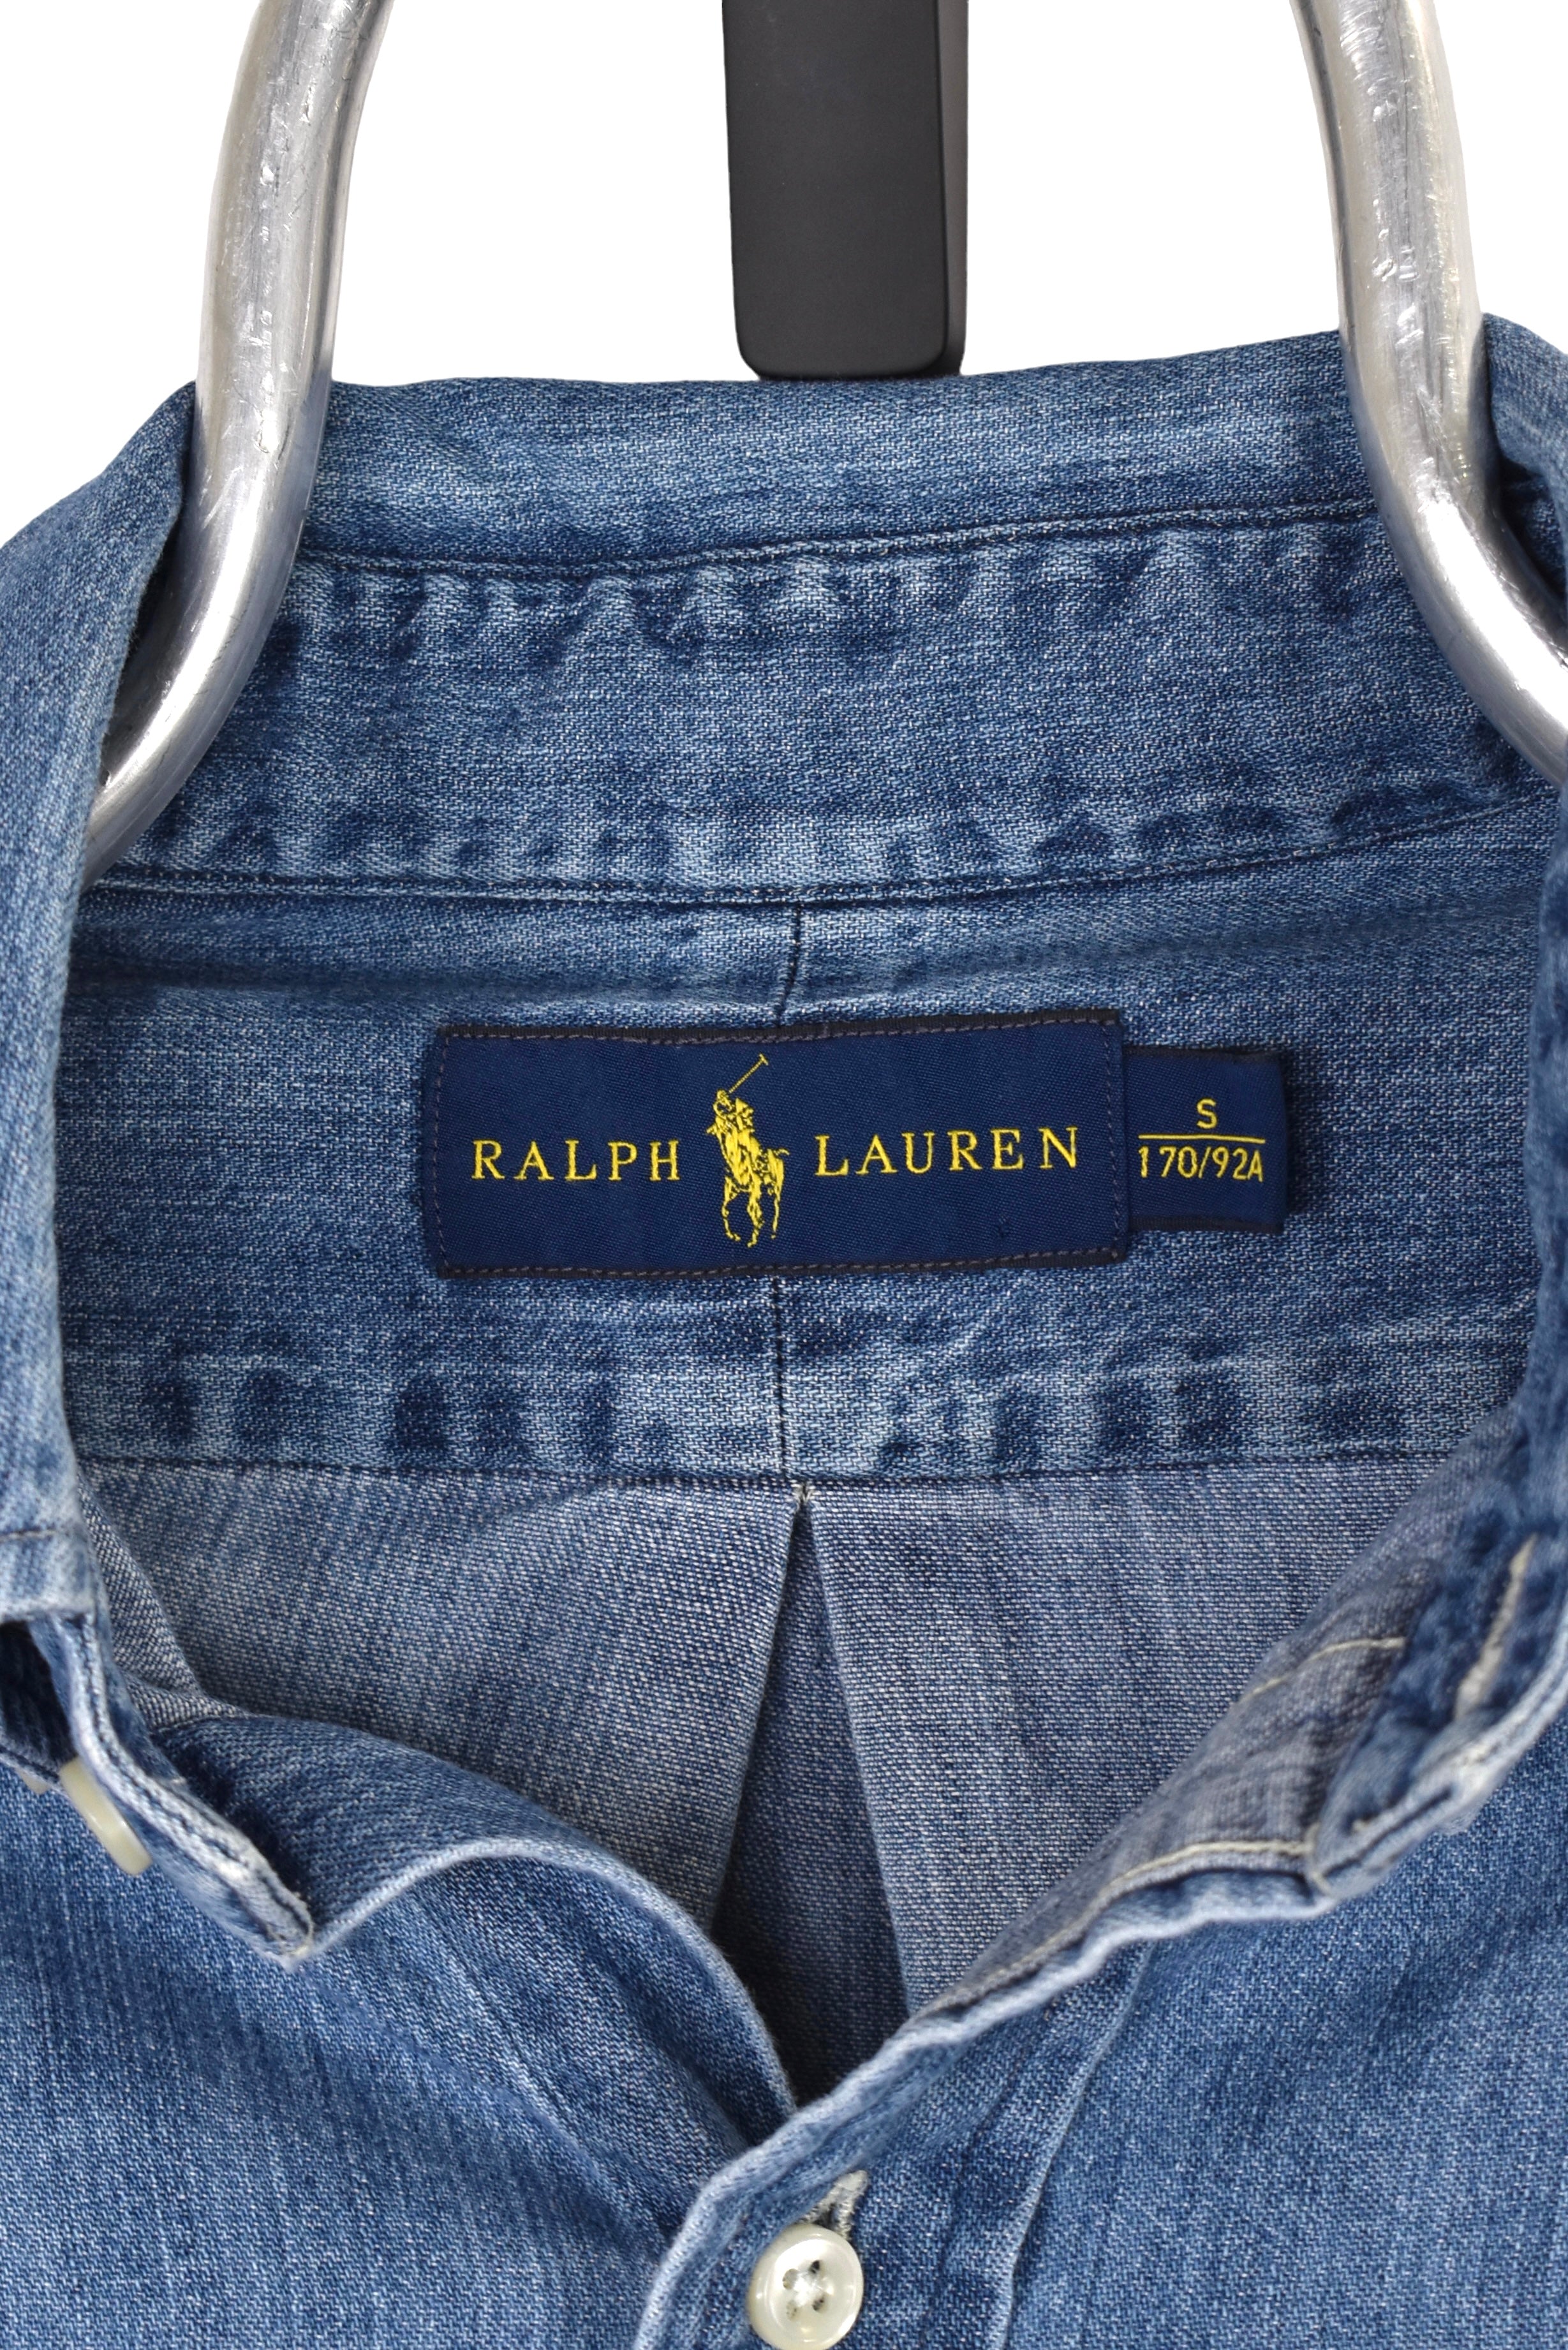 Vintage Ralph Lauren shirt (S), denim embroidered button up